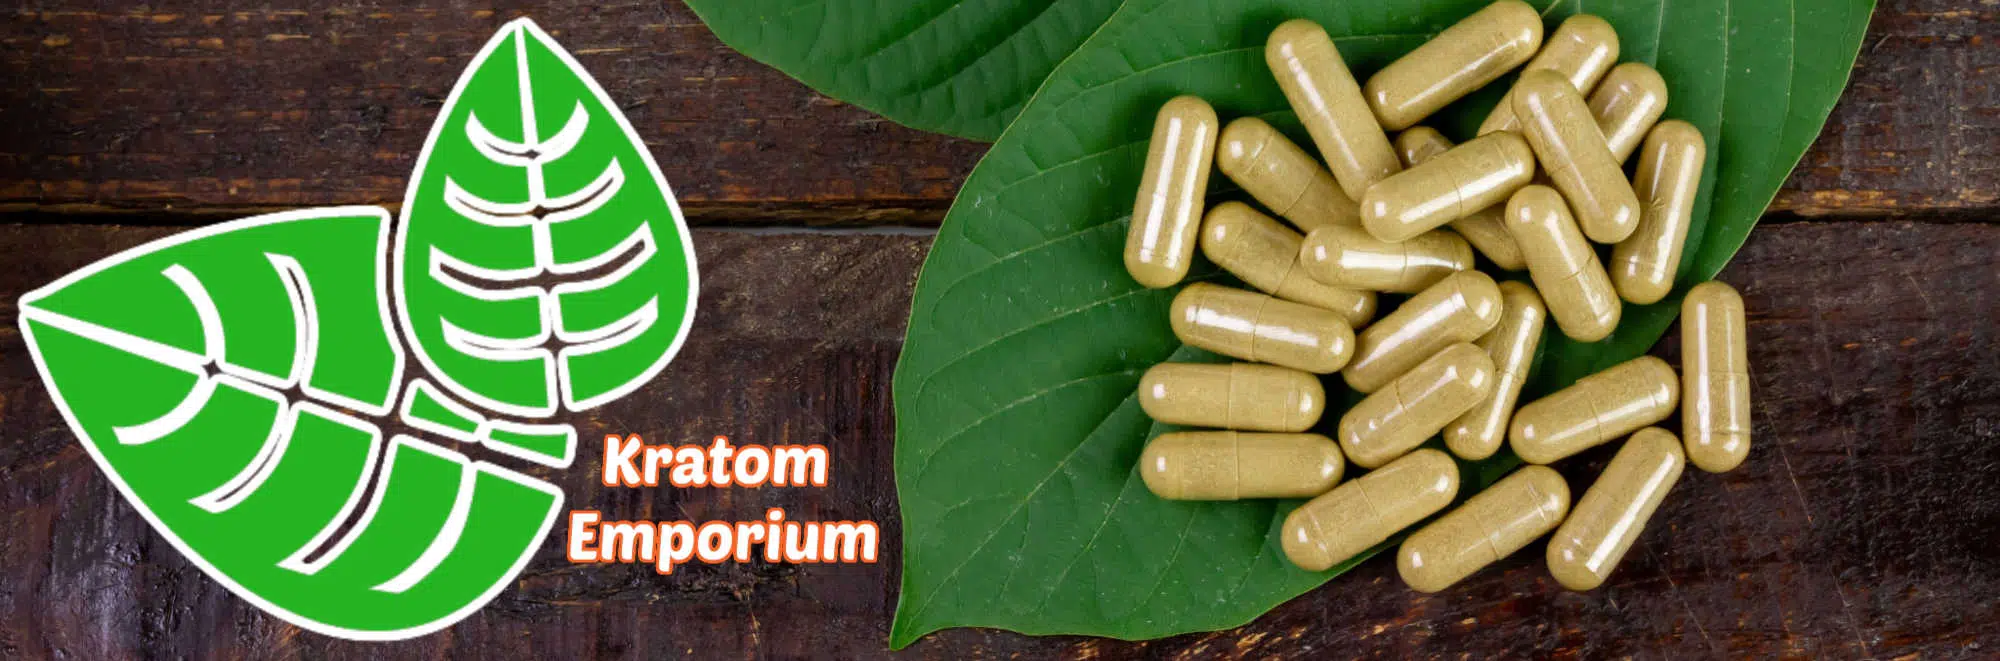 image of kratom emporium products